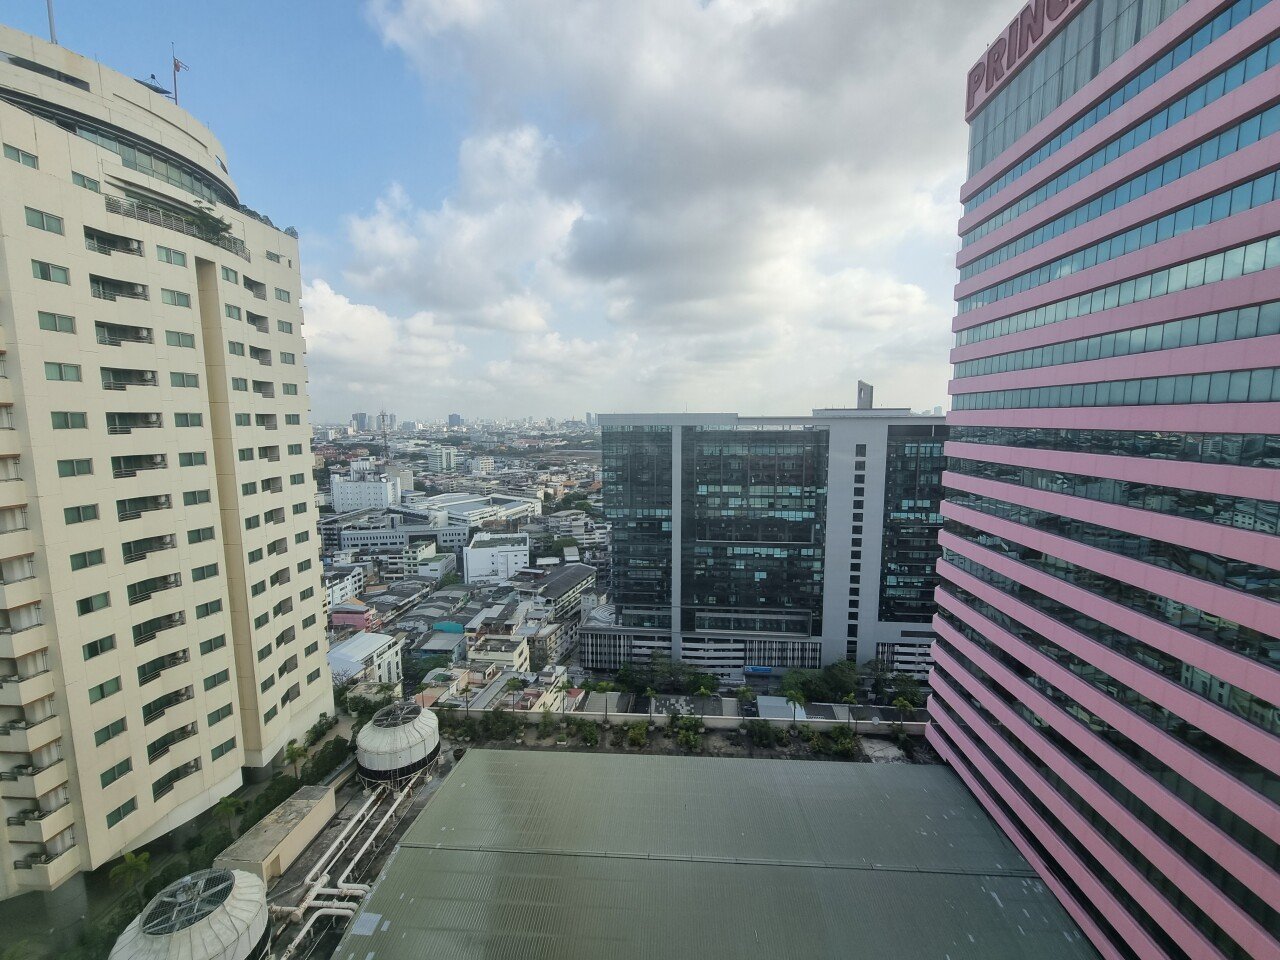 20220317_090135.jpg (ㅅㅇ) 코로나시국 방콕여행 모음